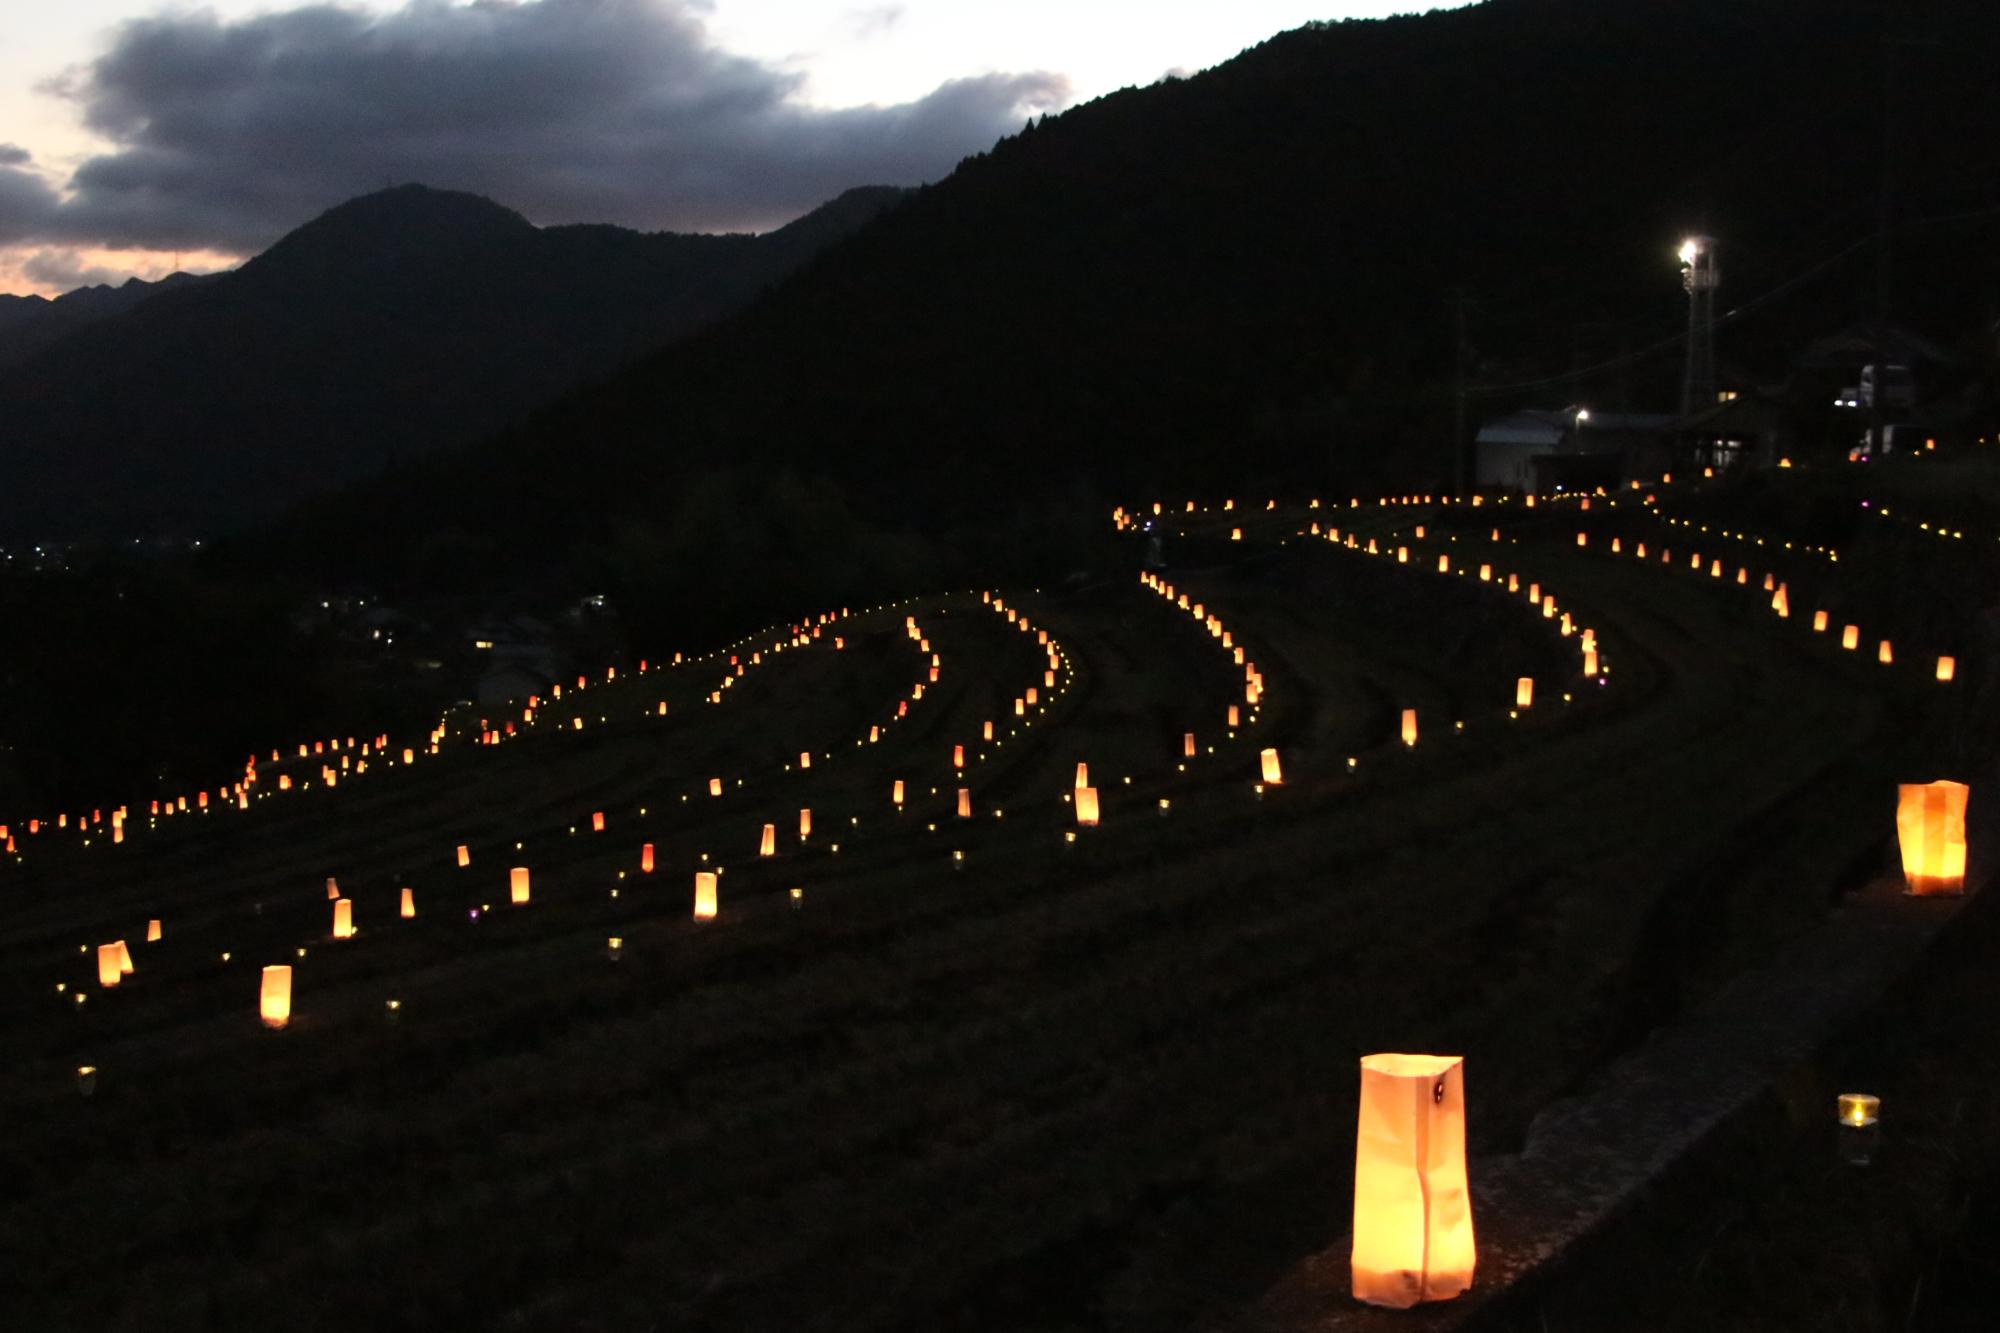 山田の棚田のライトアップイベント「棚田の灯り」で光輝きながらあぜ道に並ぶ灯篭の写真